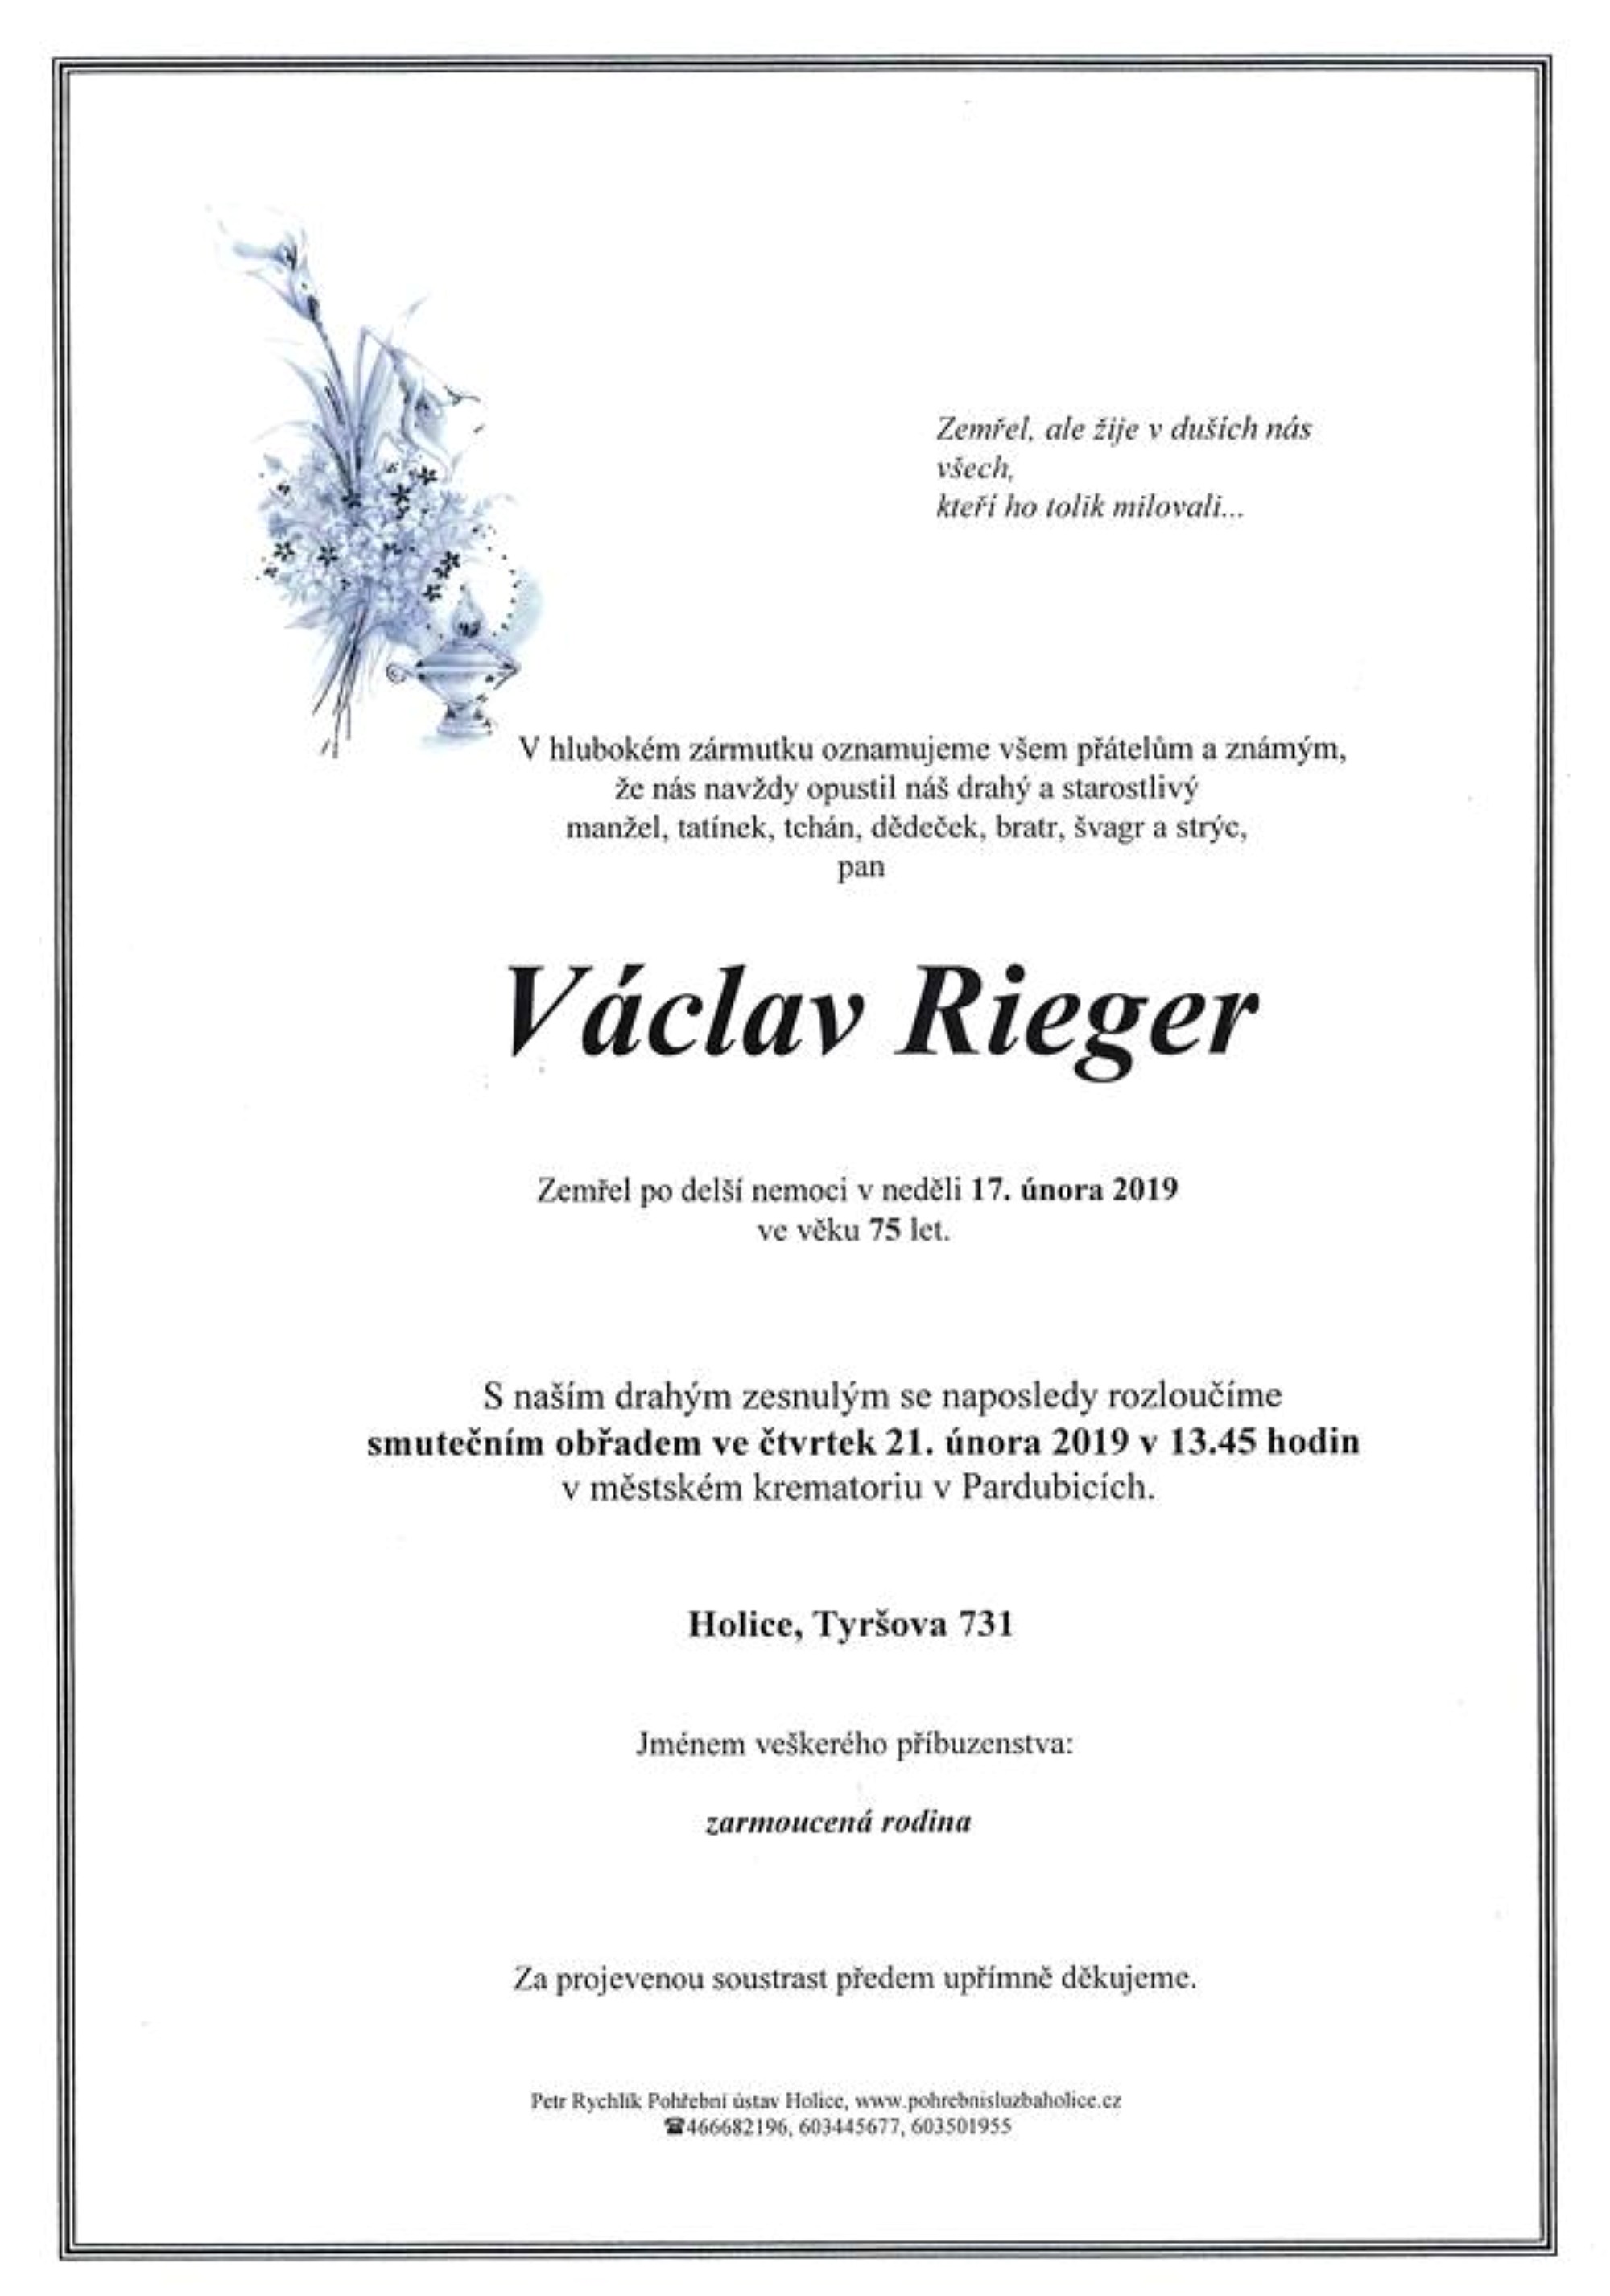 Václav Rieger